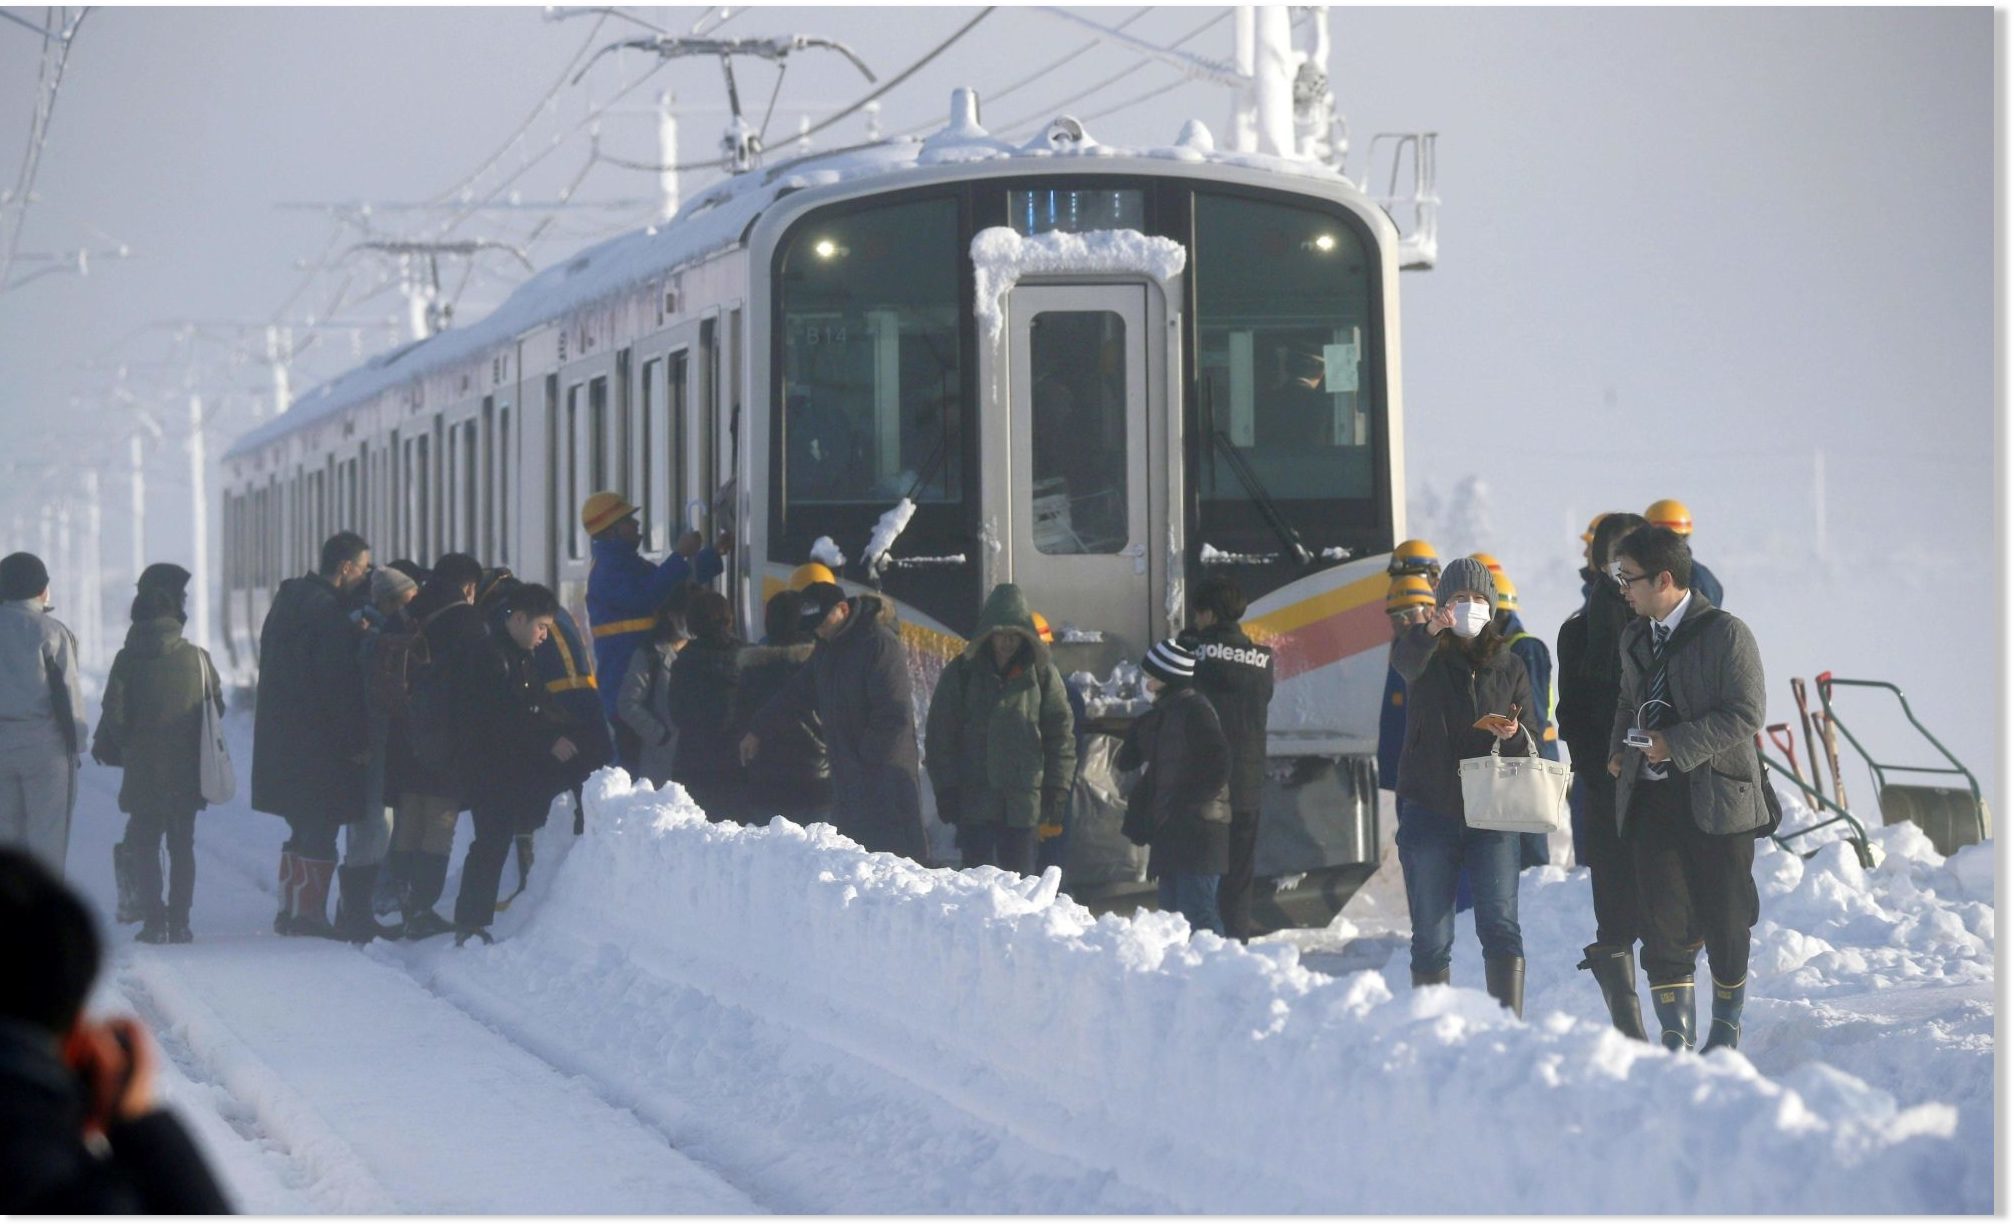 Velike snježne padavine zarobile 430 putnika preko noći na nasukanom vlaku u Japanu